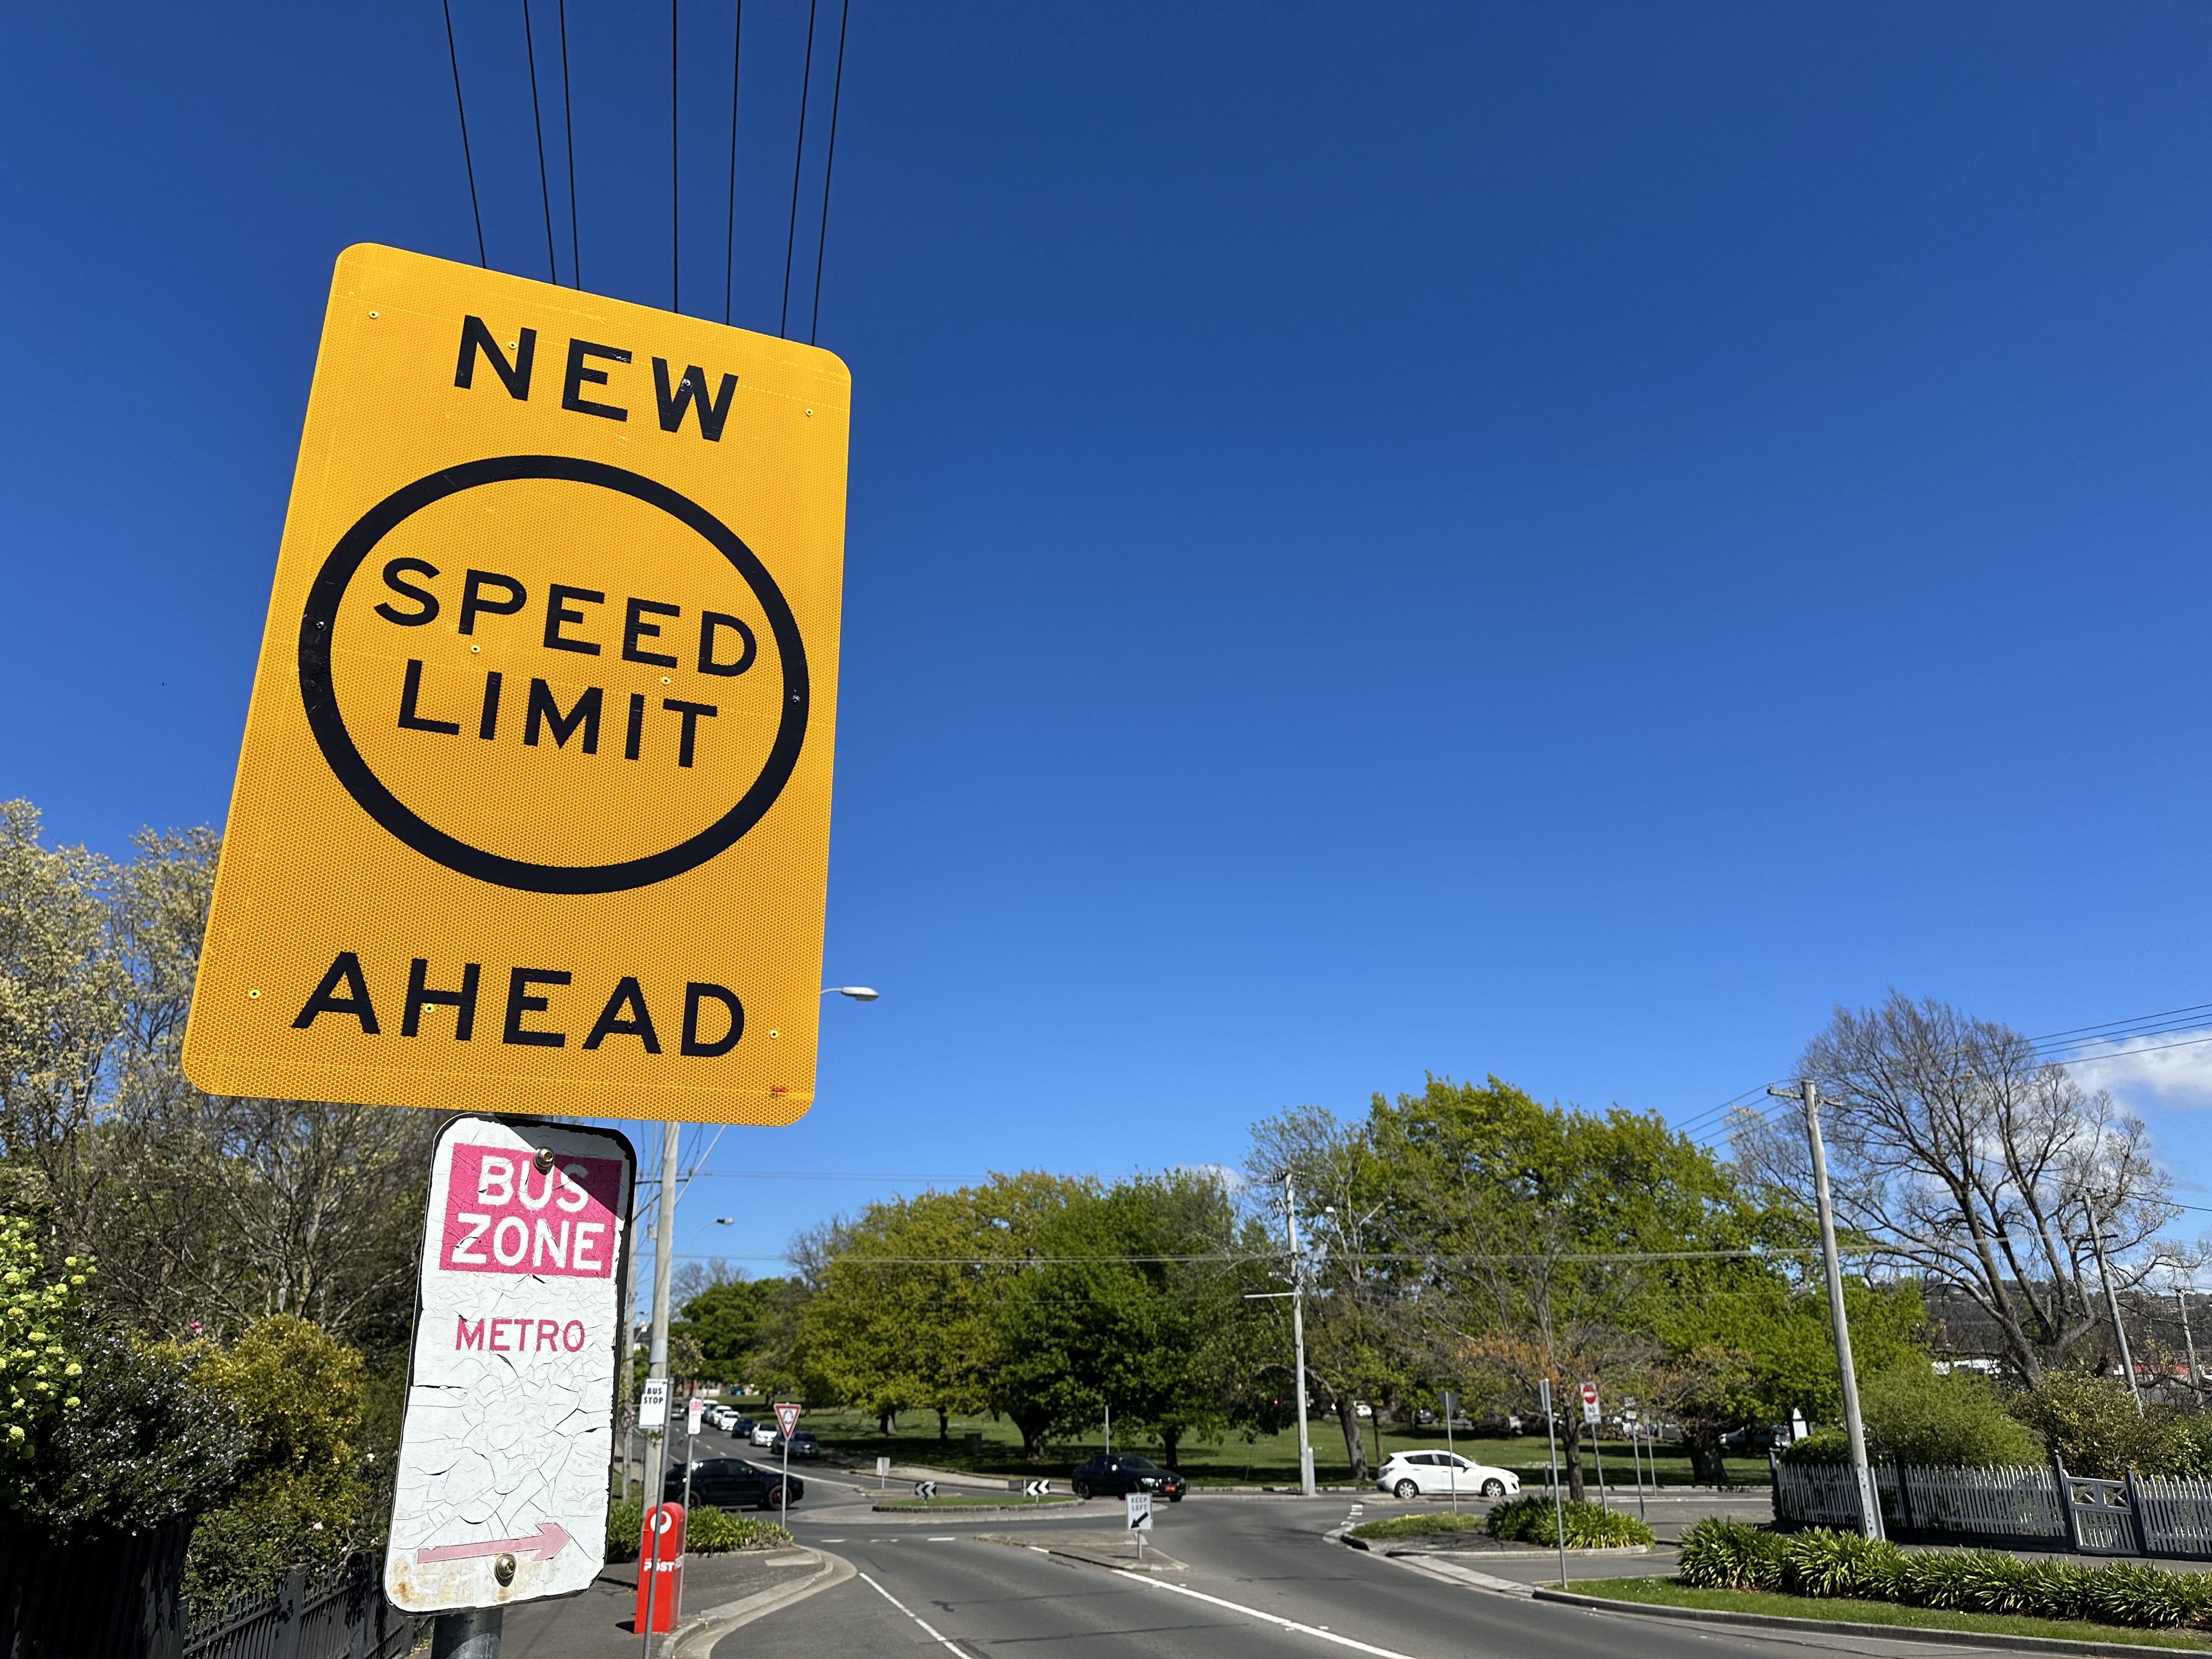 New speed limit ahead